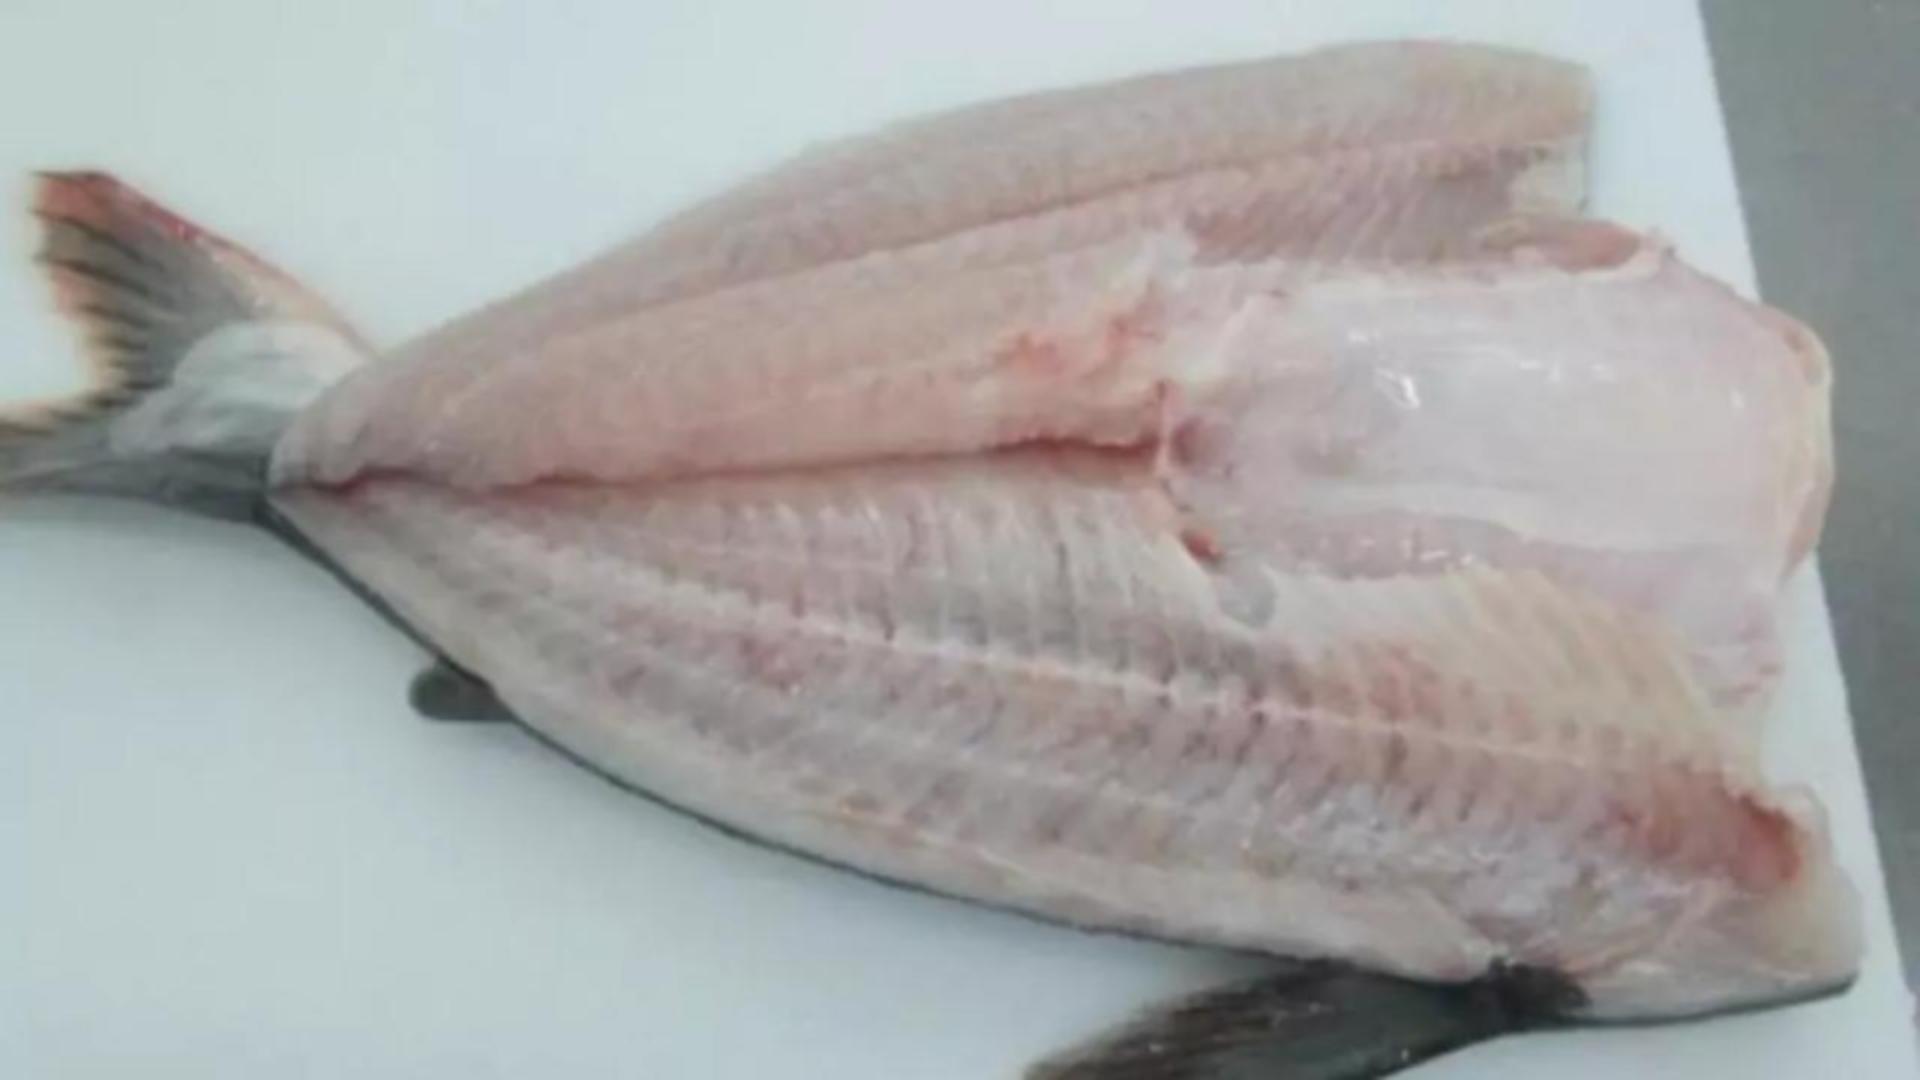 Cel mai toxic pește vândut în România. Mulți îl consumă pentru că e ieftin, fără să știe cât este de periculos